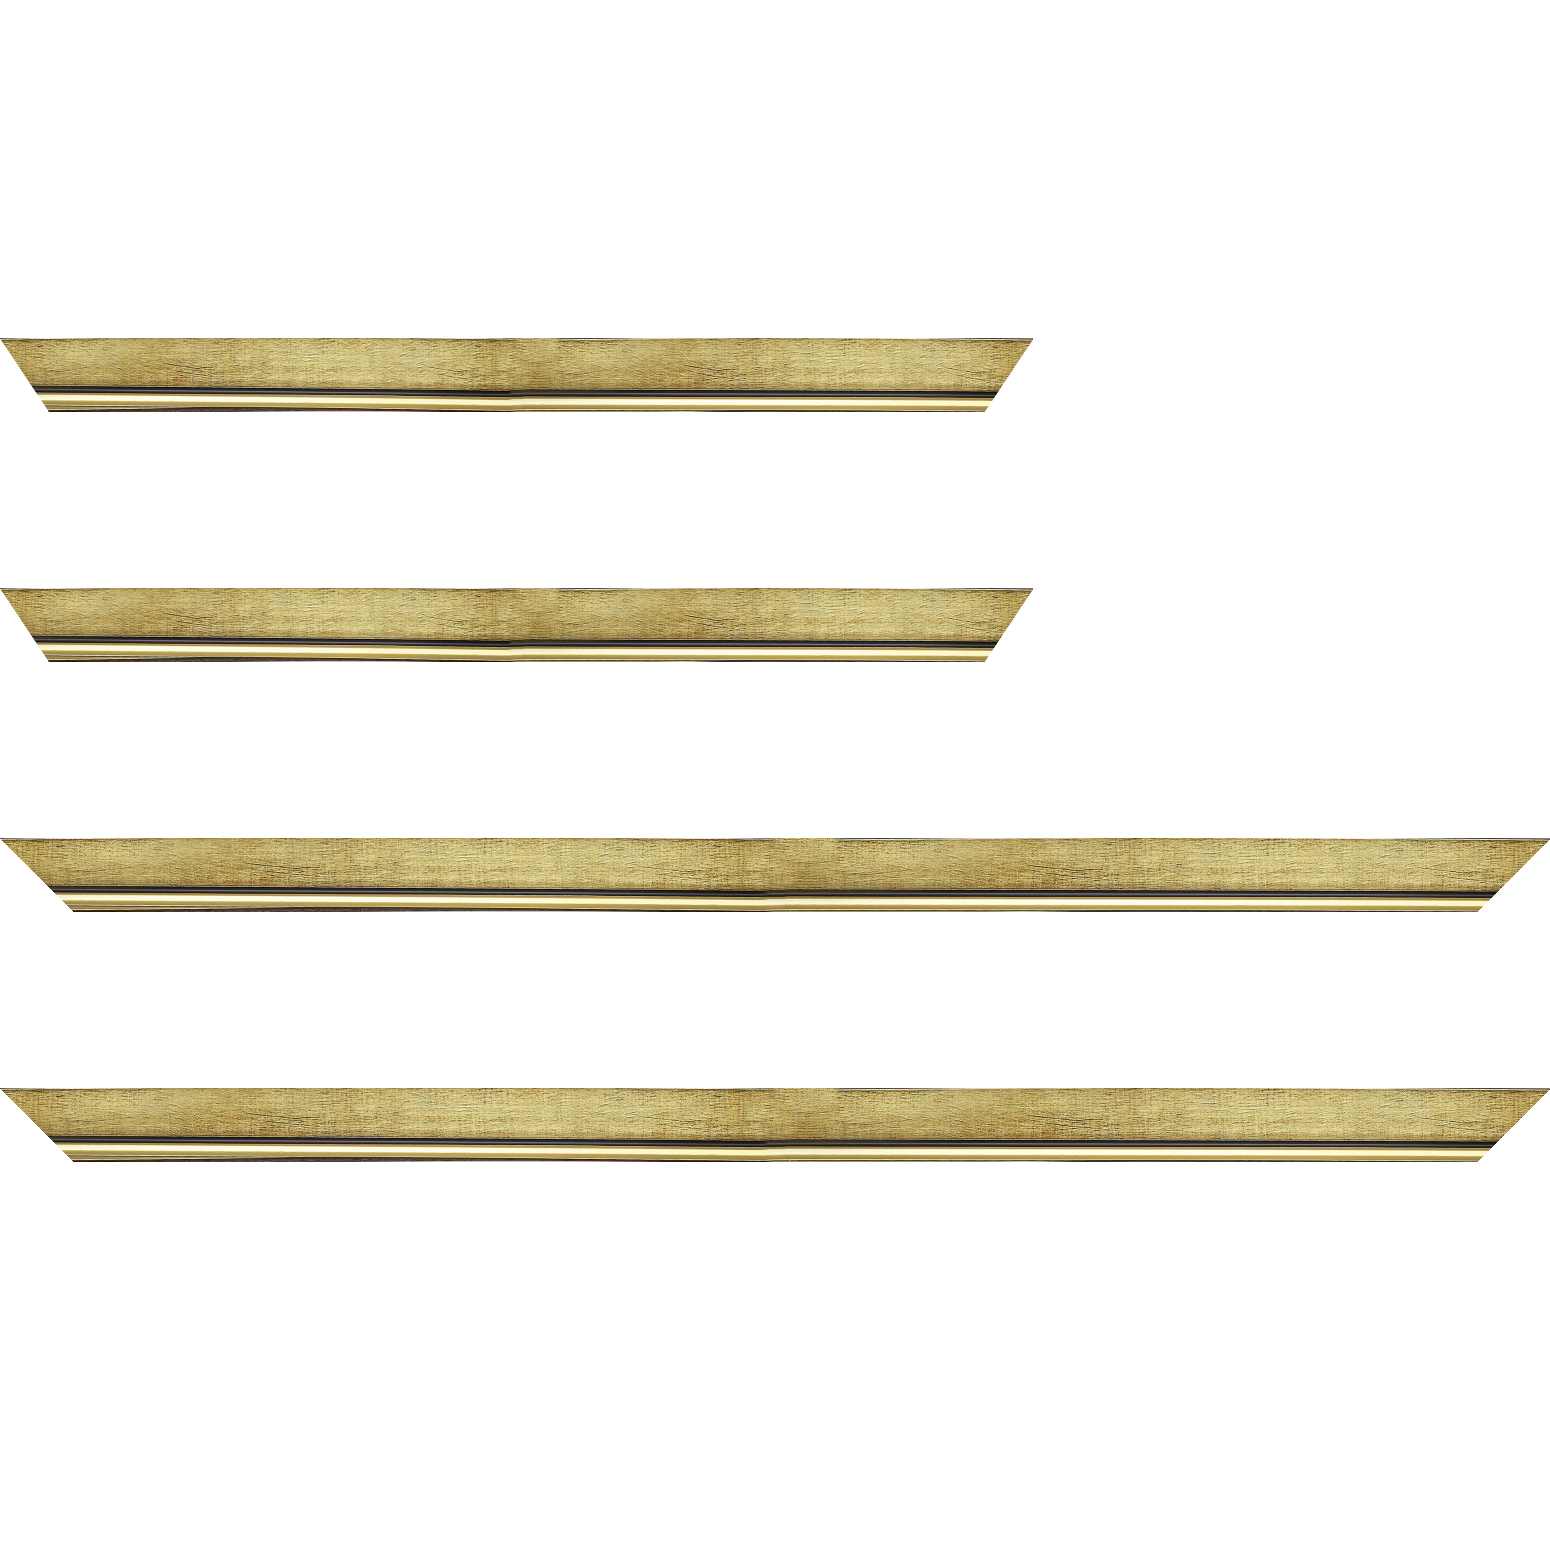 Baguette bois profil plat largeur 2.5cm couleur or filet or surligné noir - 35x24